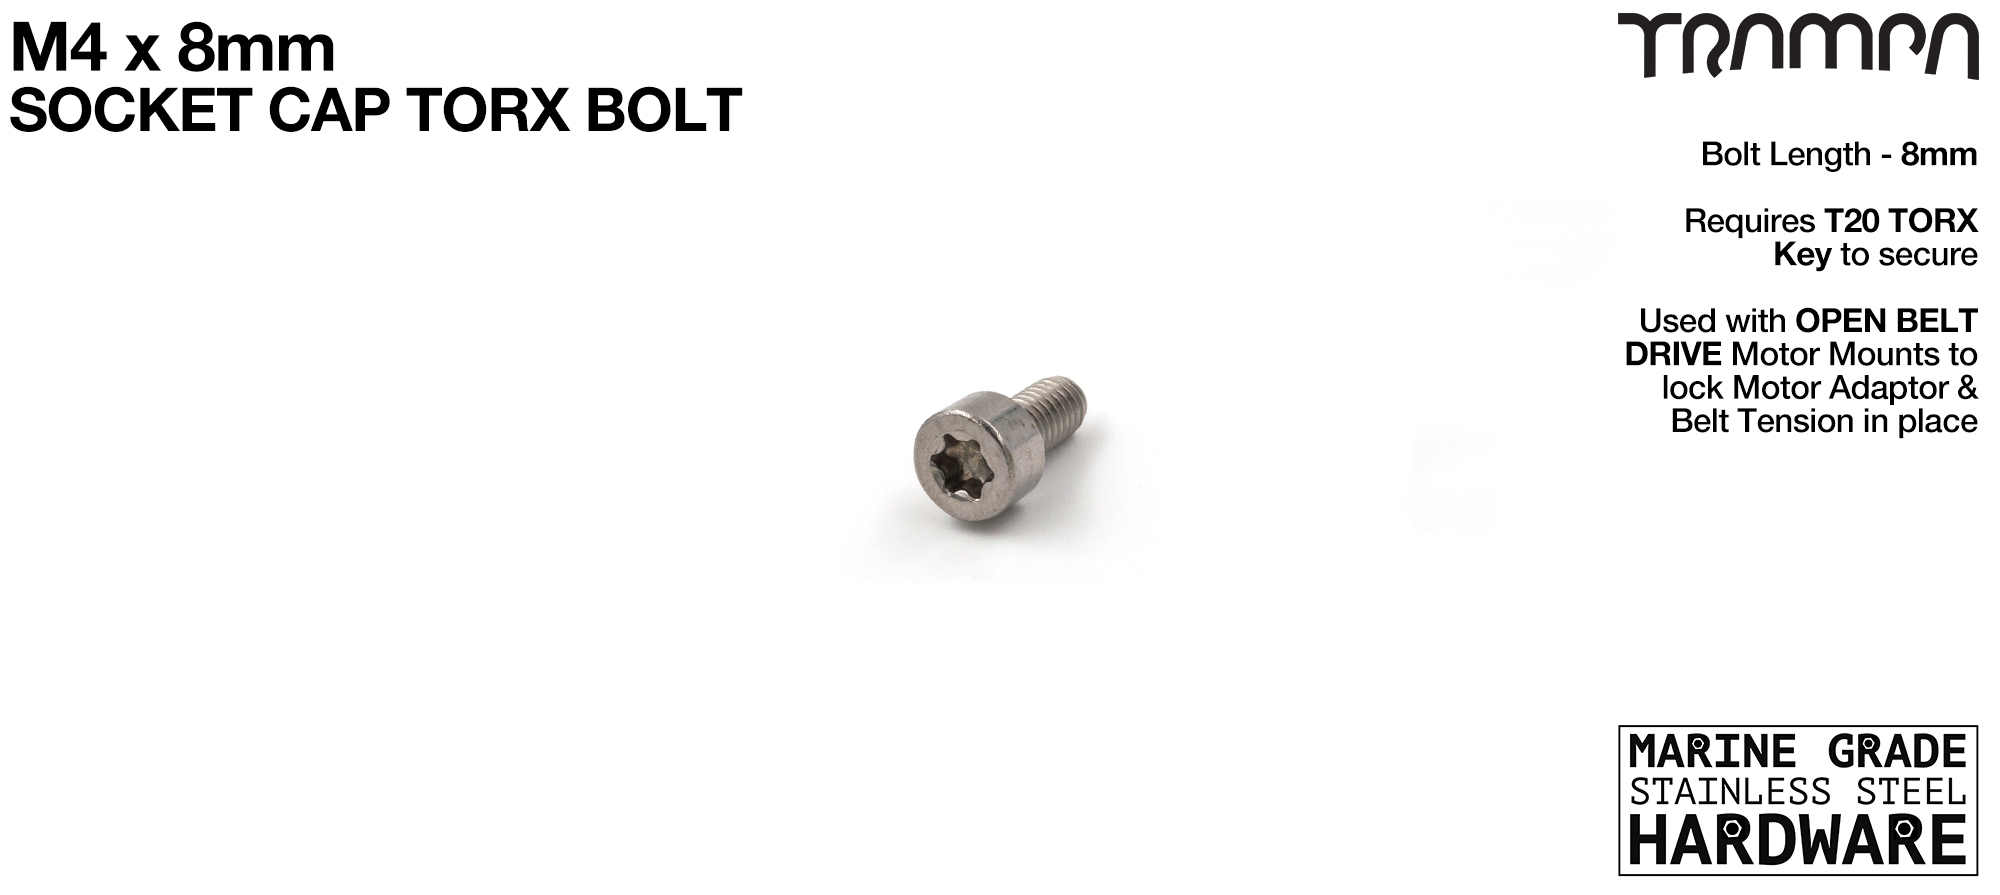 M4 x 8mm Socket Cap TORX Bolt 